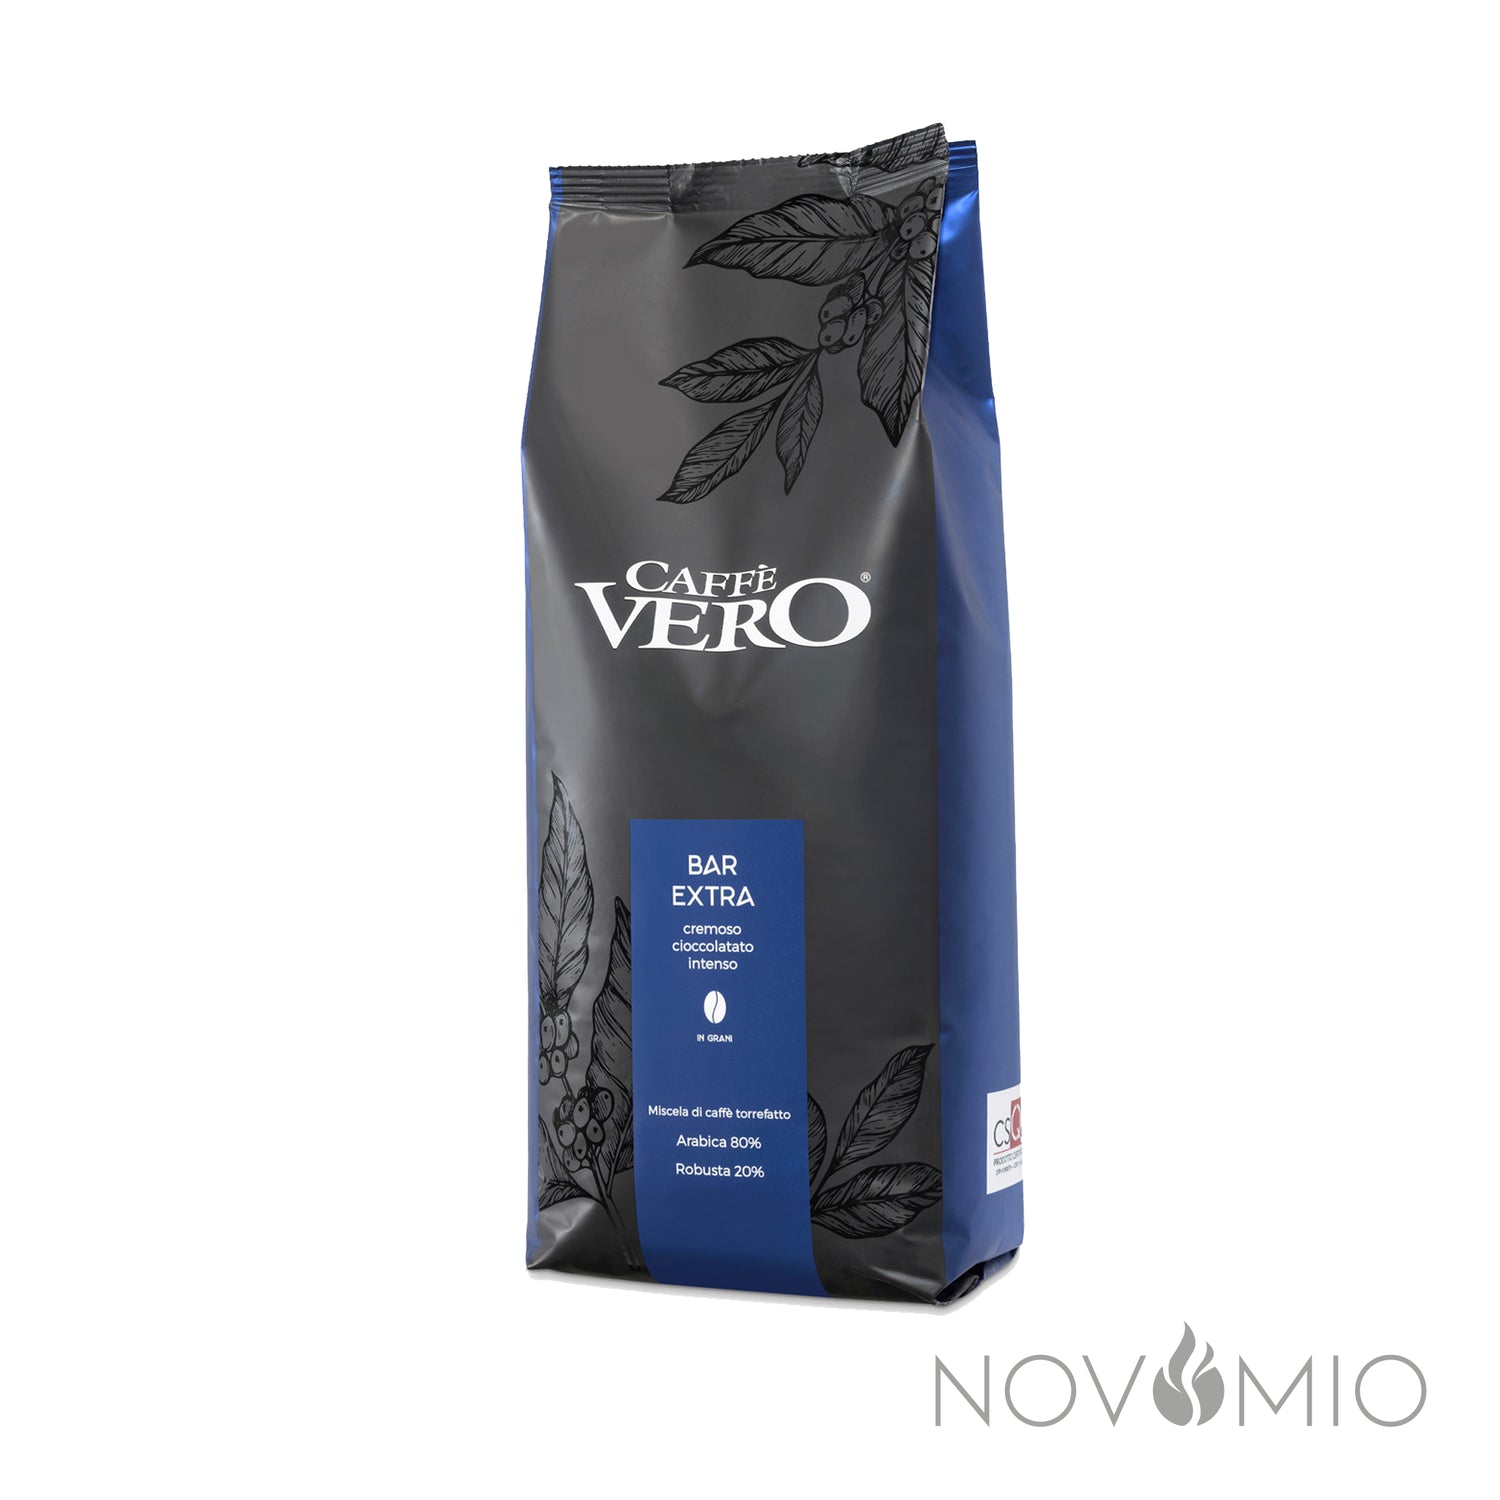 Caffe Vero - Bar Extra 1 KG